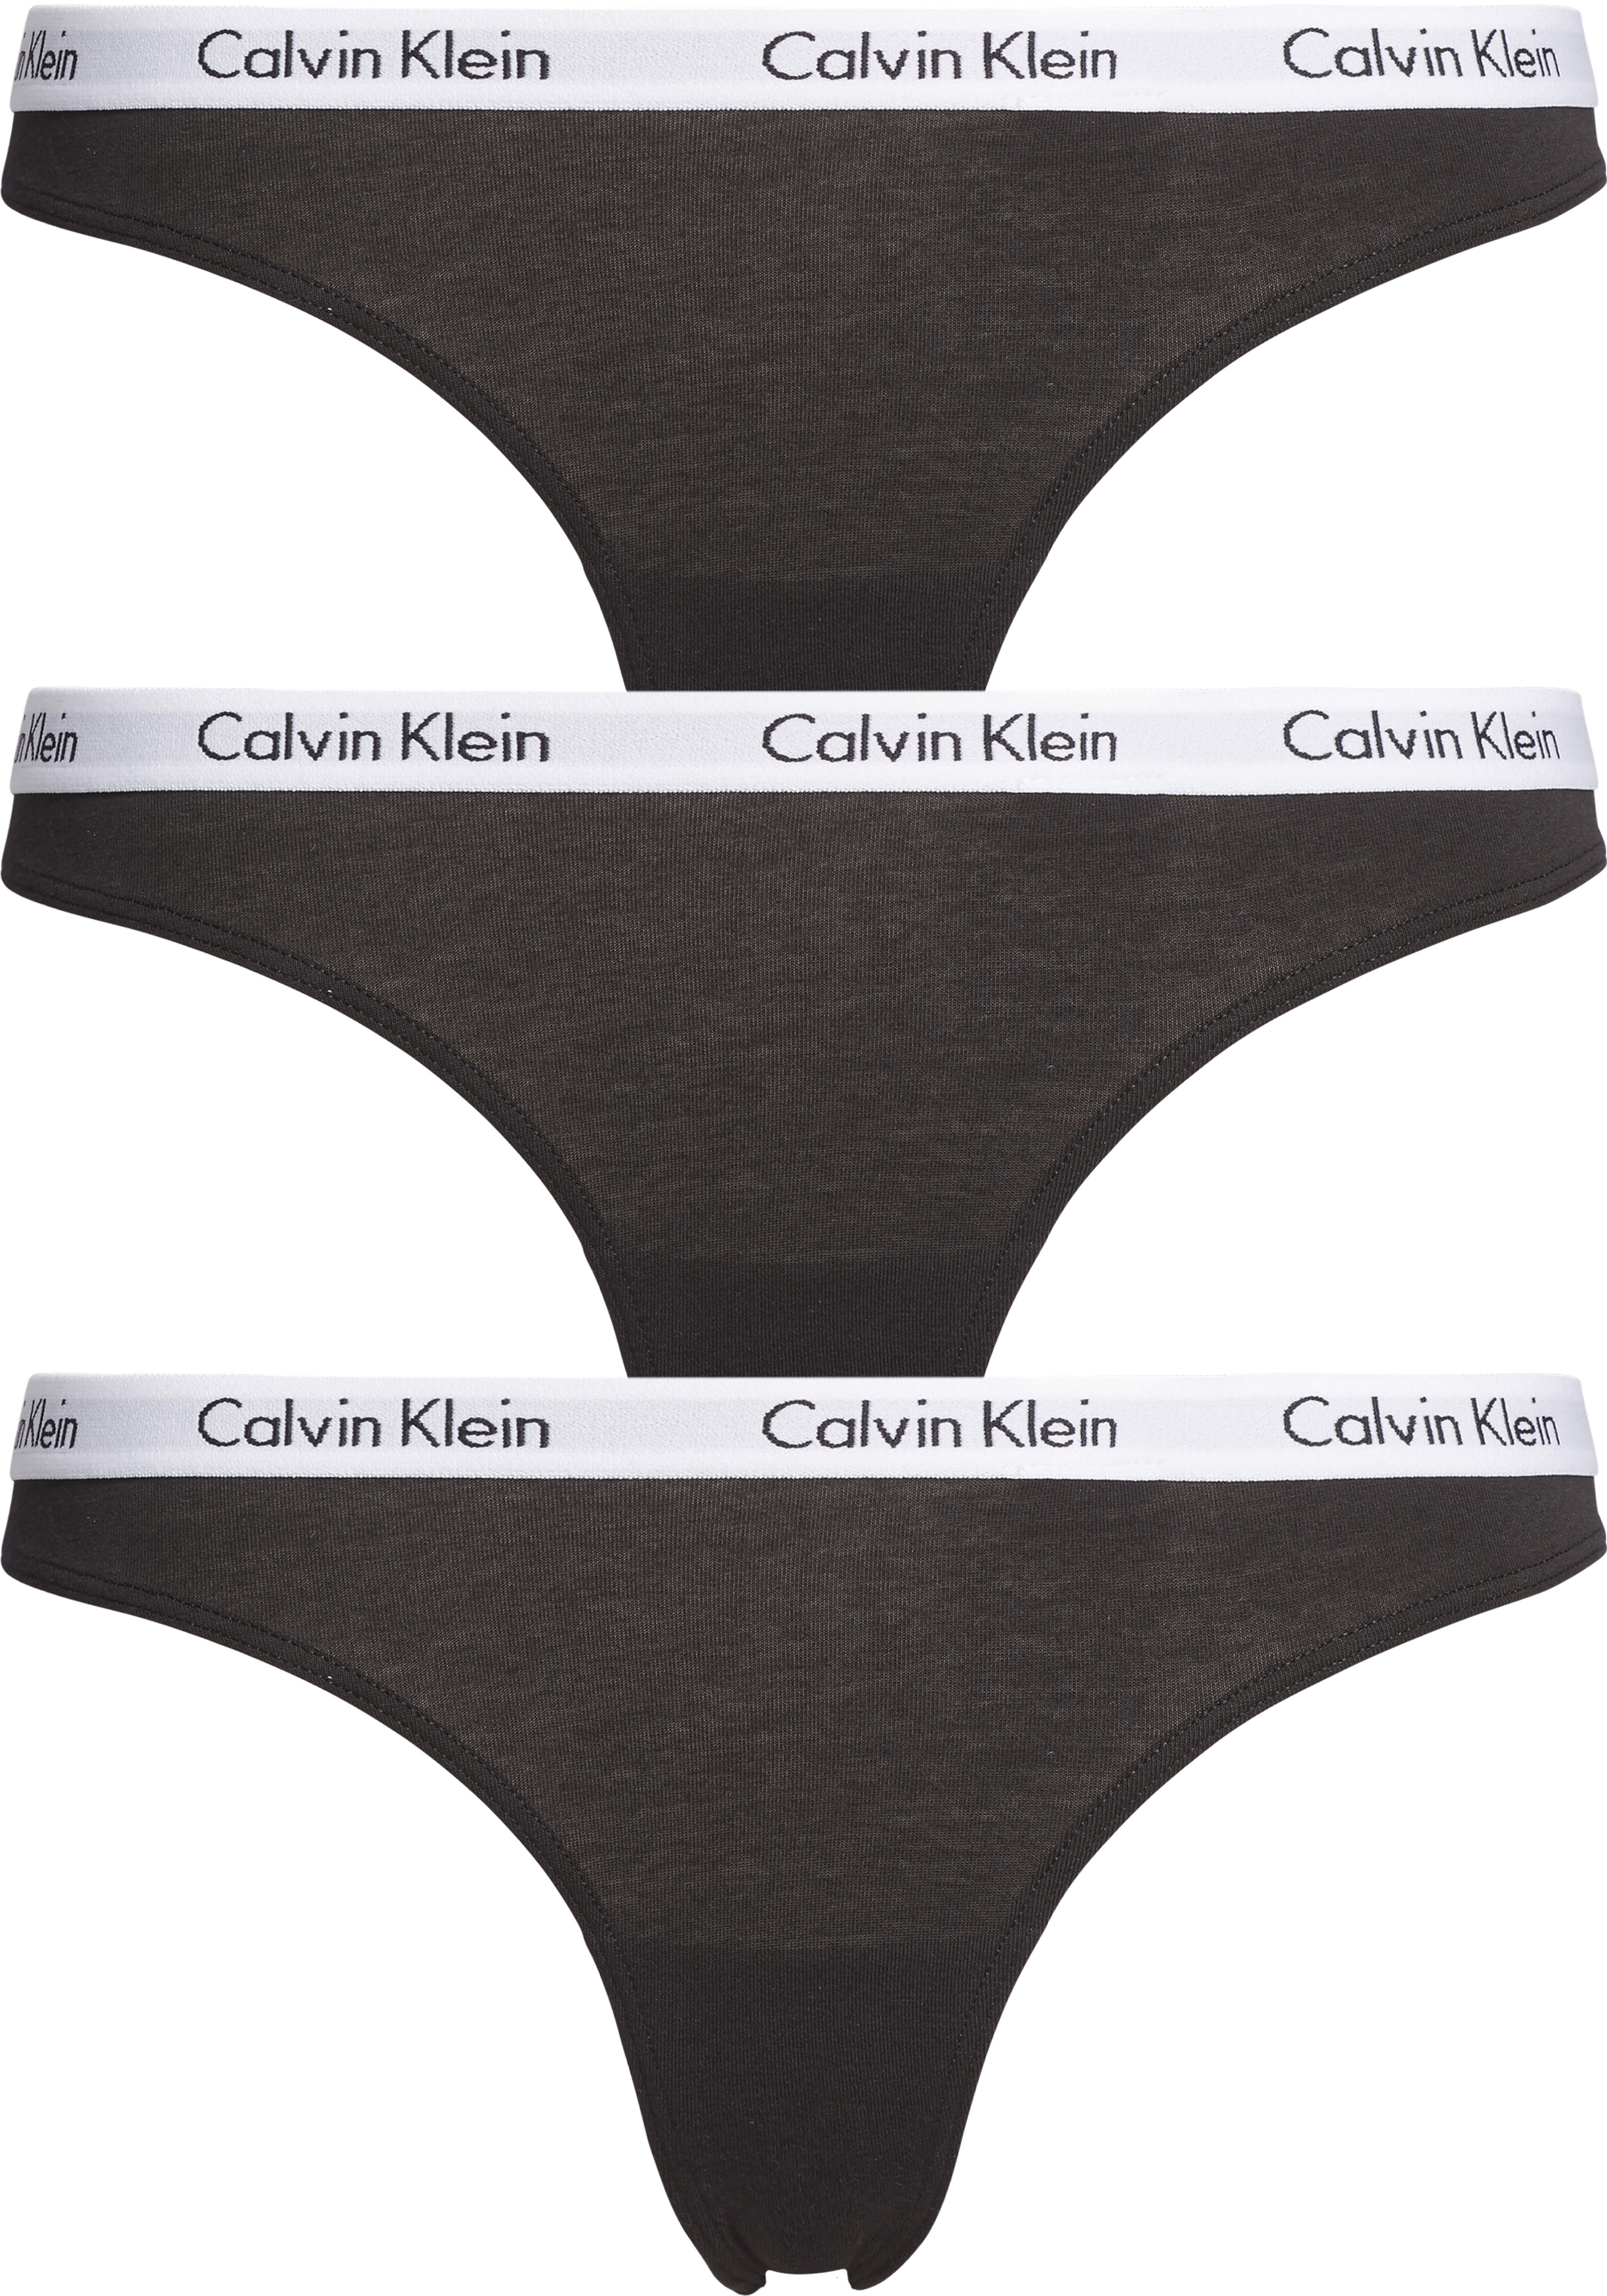 Dankbaar middag Fractie Calvin Klein dames strings (3-pack), zwart - Shop de nieuwste voorjaarsmode